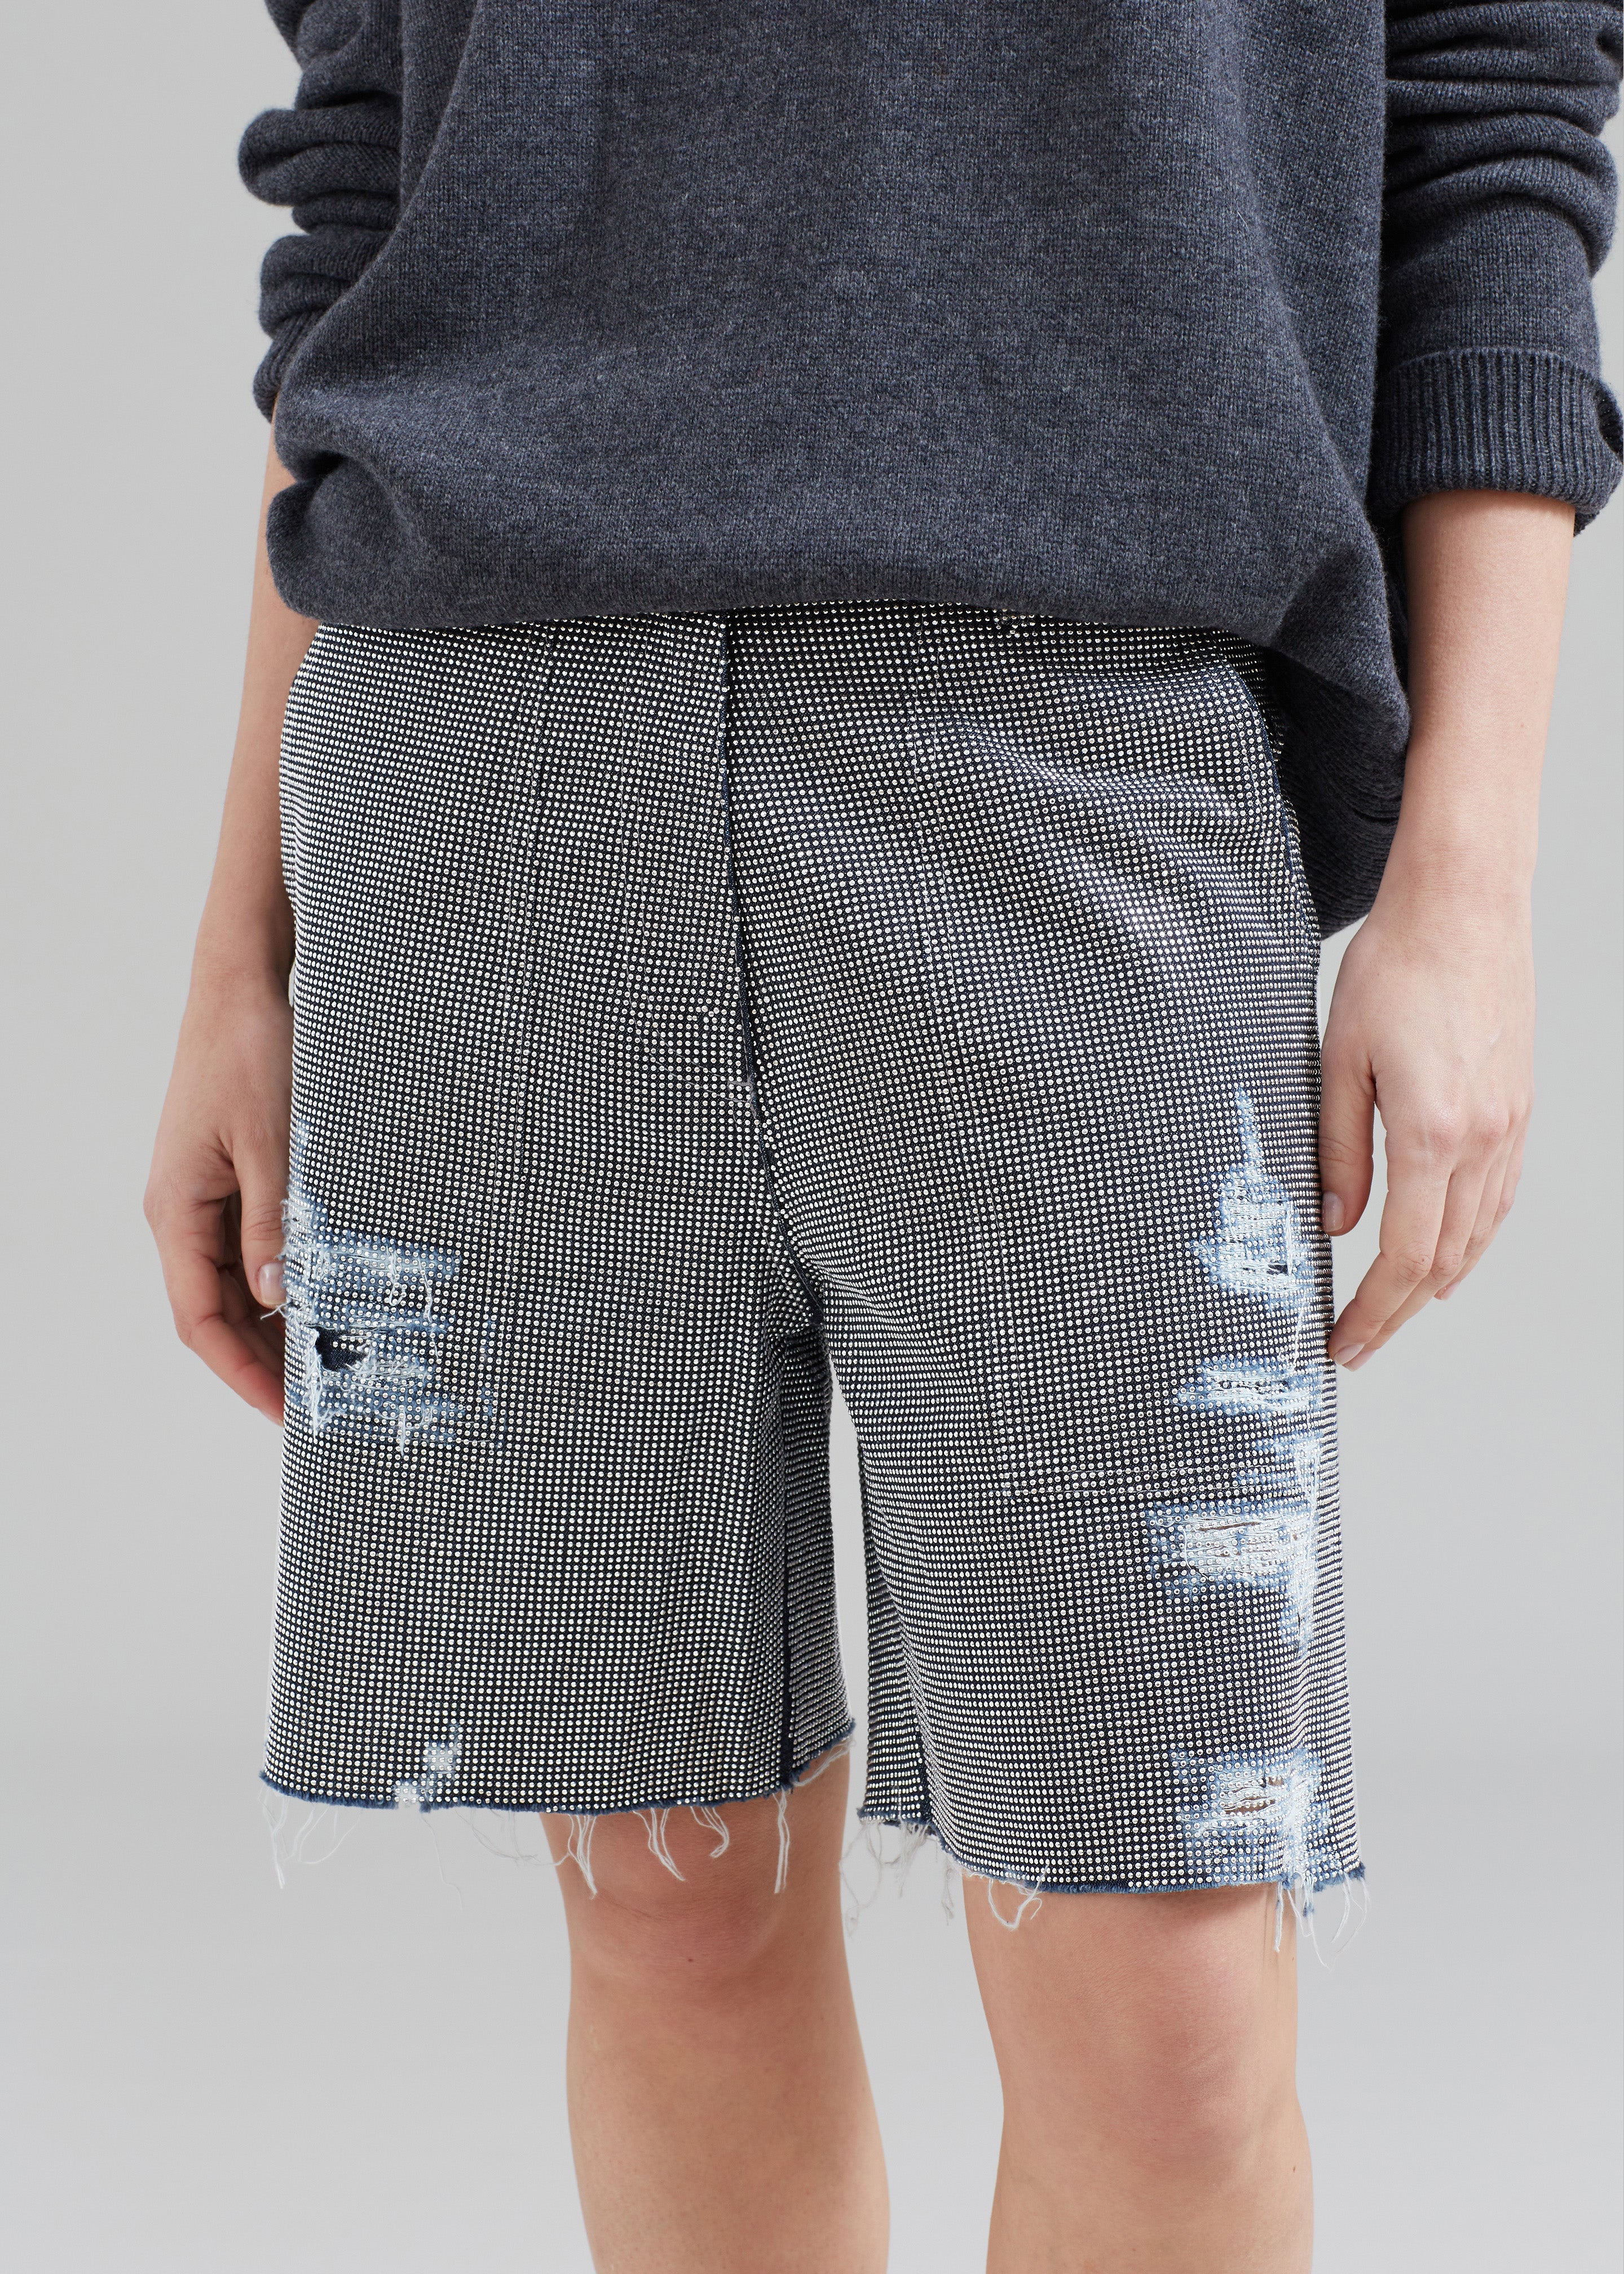 JW Anderson Studded Workwear Shorts - Indigo/Silver - 8